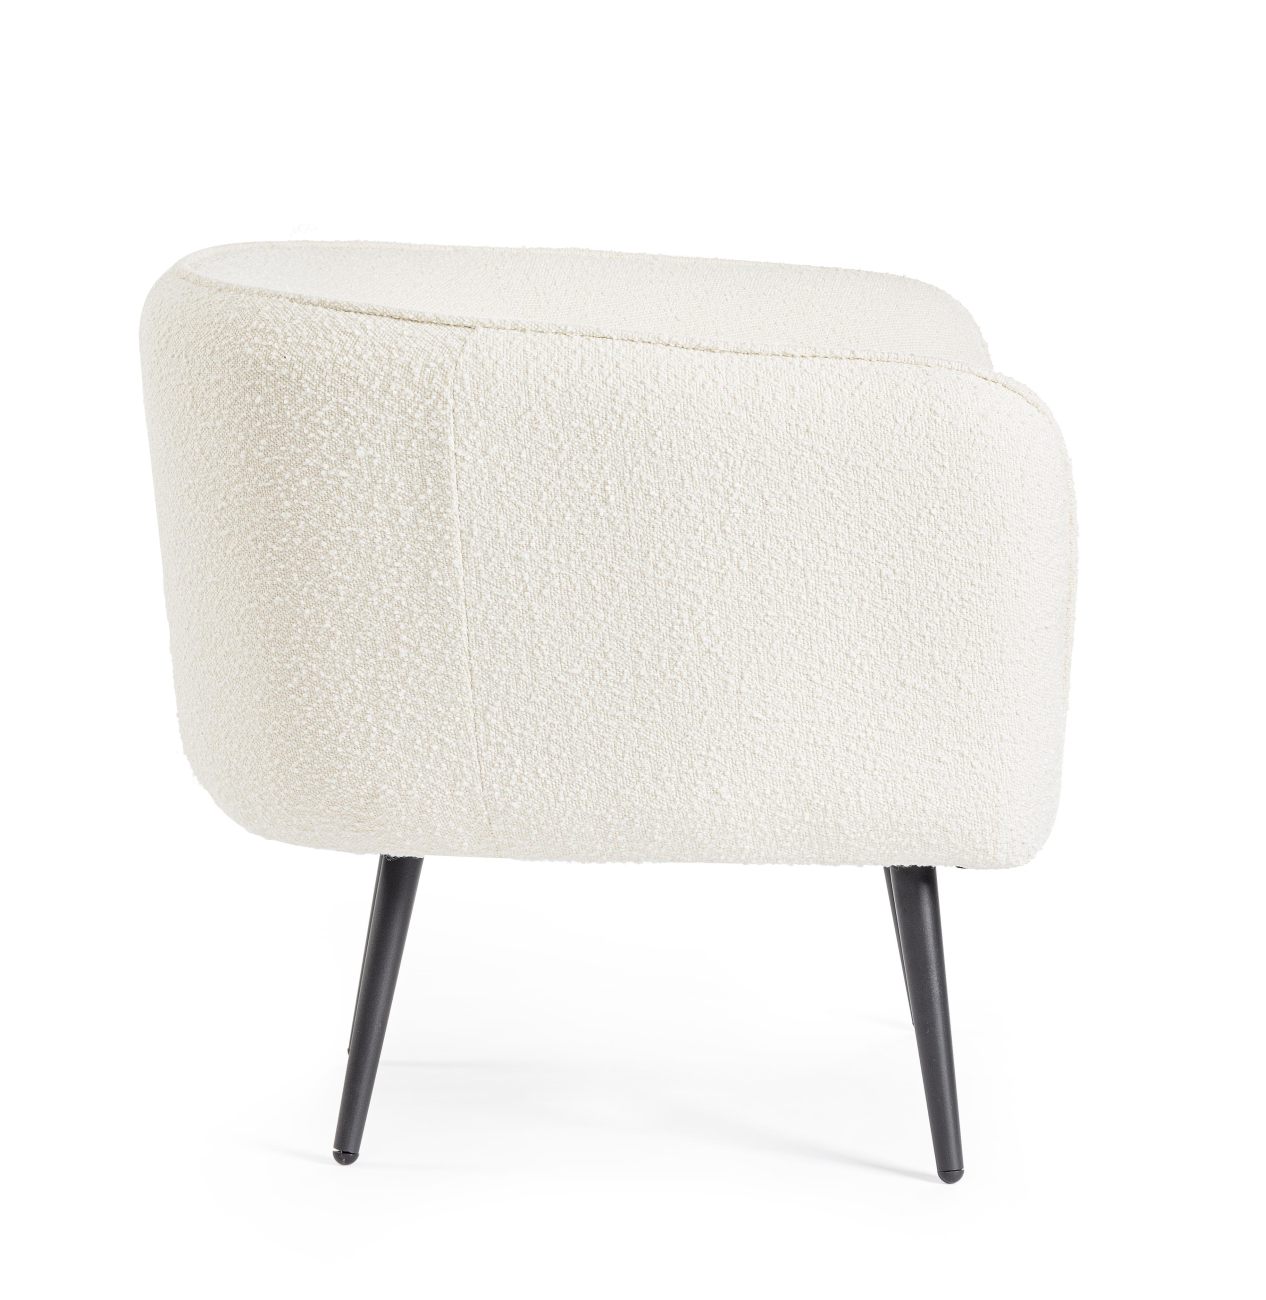 Der Sessel Avril überzeugt mit seinem modernen Stil. Gefertigt wurde er aus Bouclè-Stoff, welcher einen weißen Farbton besitzt. Das Gestell ist aus Metall und hat eine schwarze Farbe. Der Sessel verfügt über eine Armlehne.